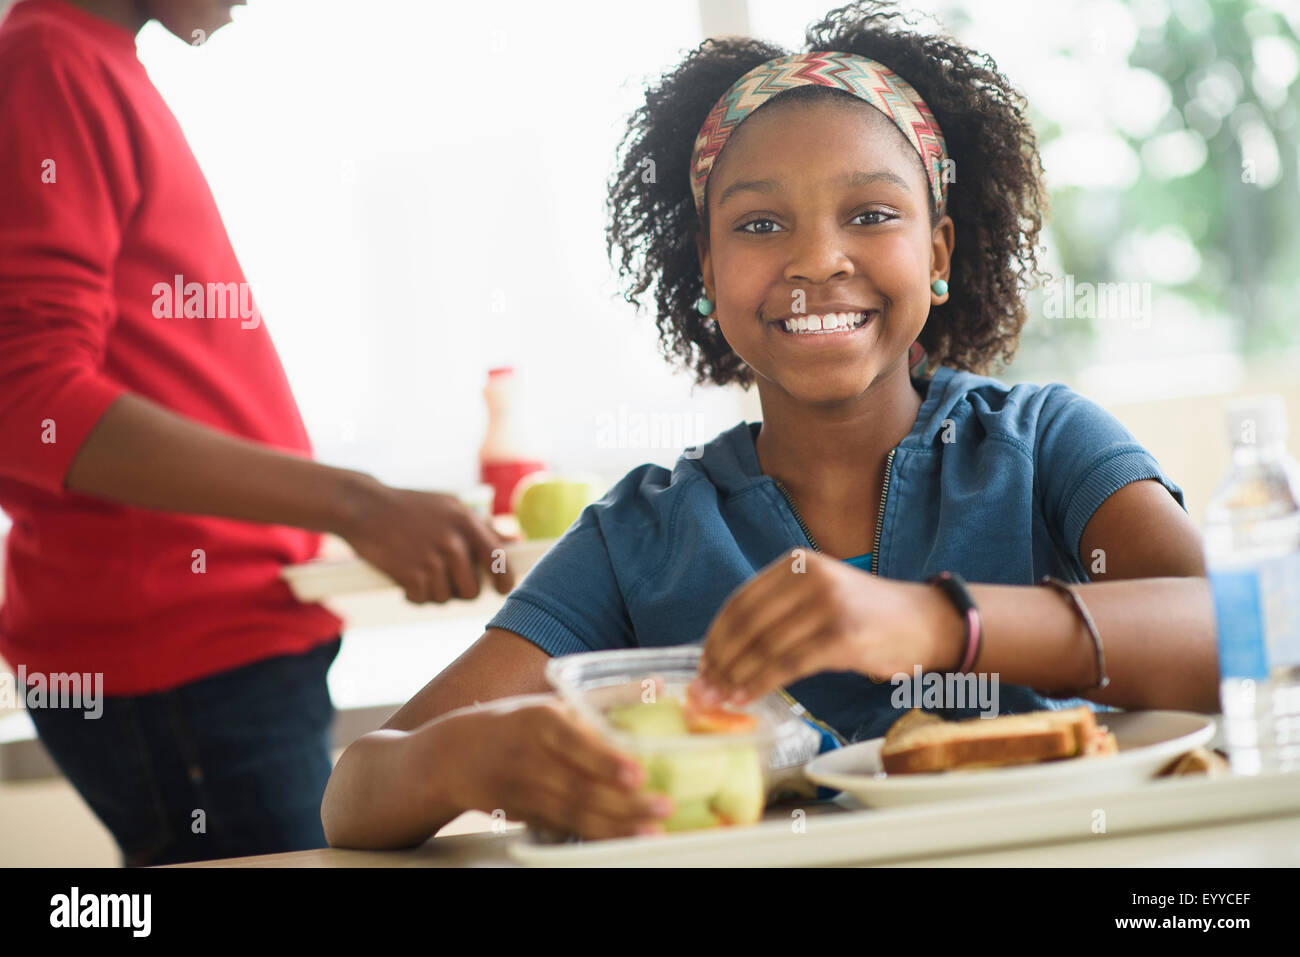 https://c8.alamy.com/comp/EYYCEF/black-students-eating-lunch-in-school-cafeteria-EYYCEF.jpg